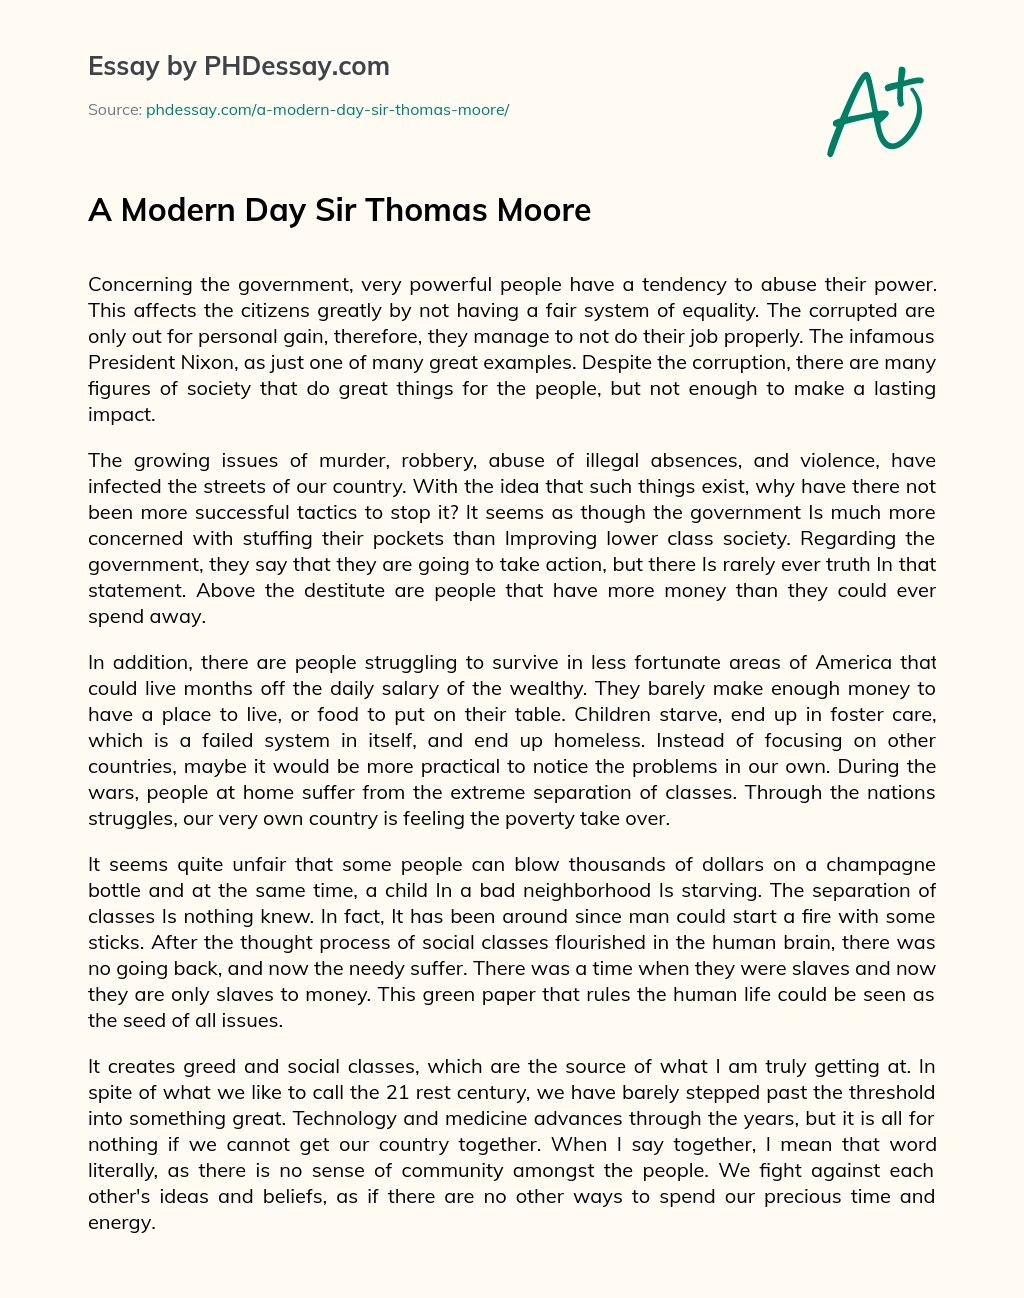 A Modern Day Sir Thomas Moore essay